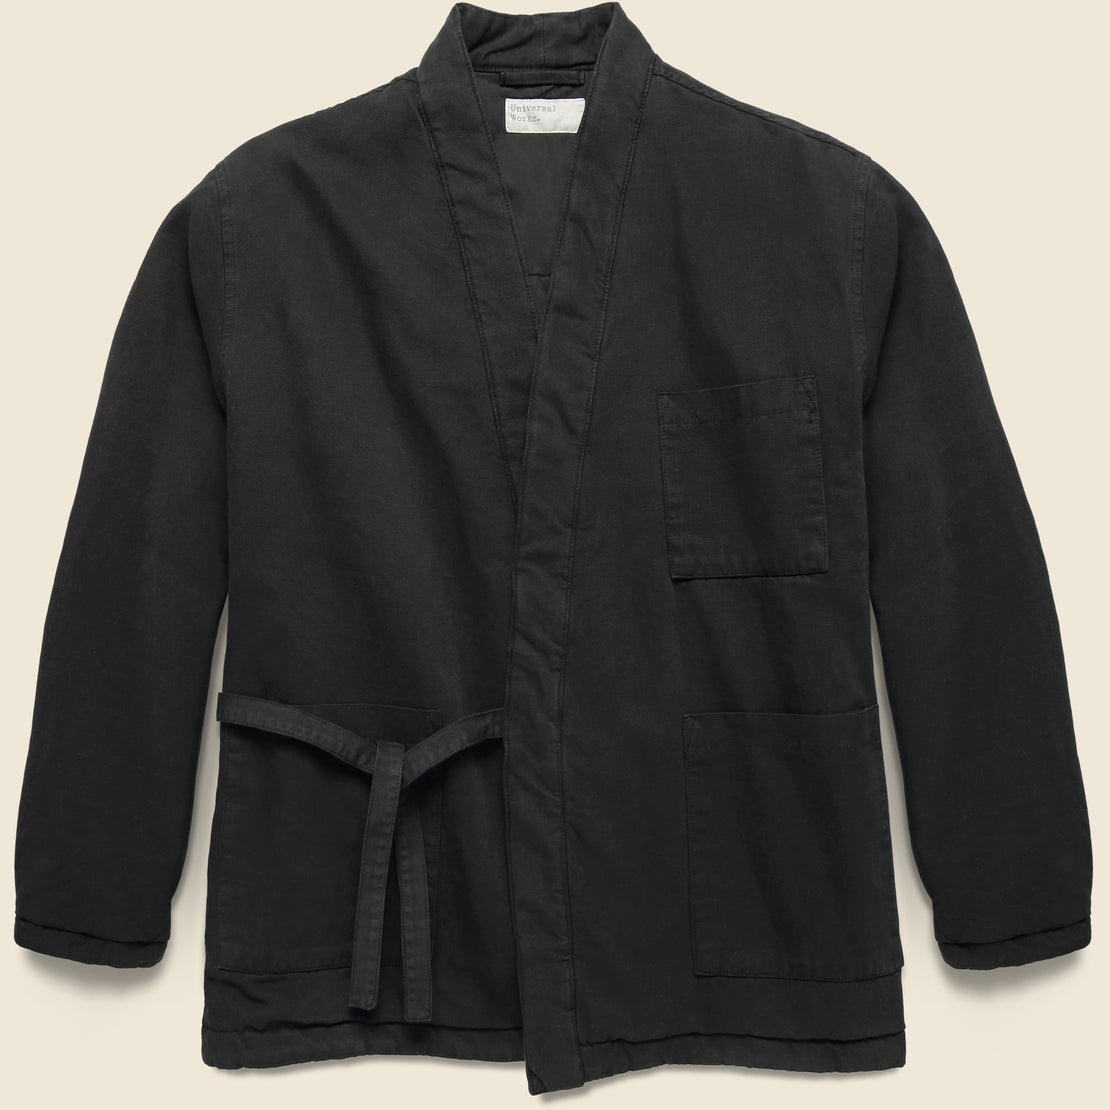 Universal Works Kyoto Work Jacket - Black Quilt